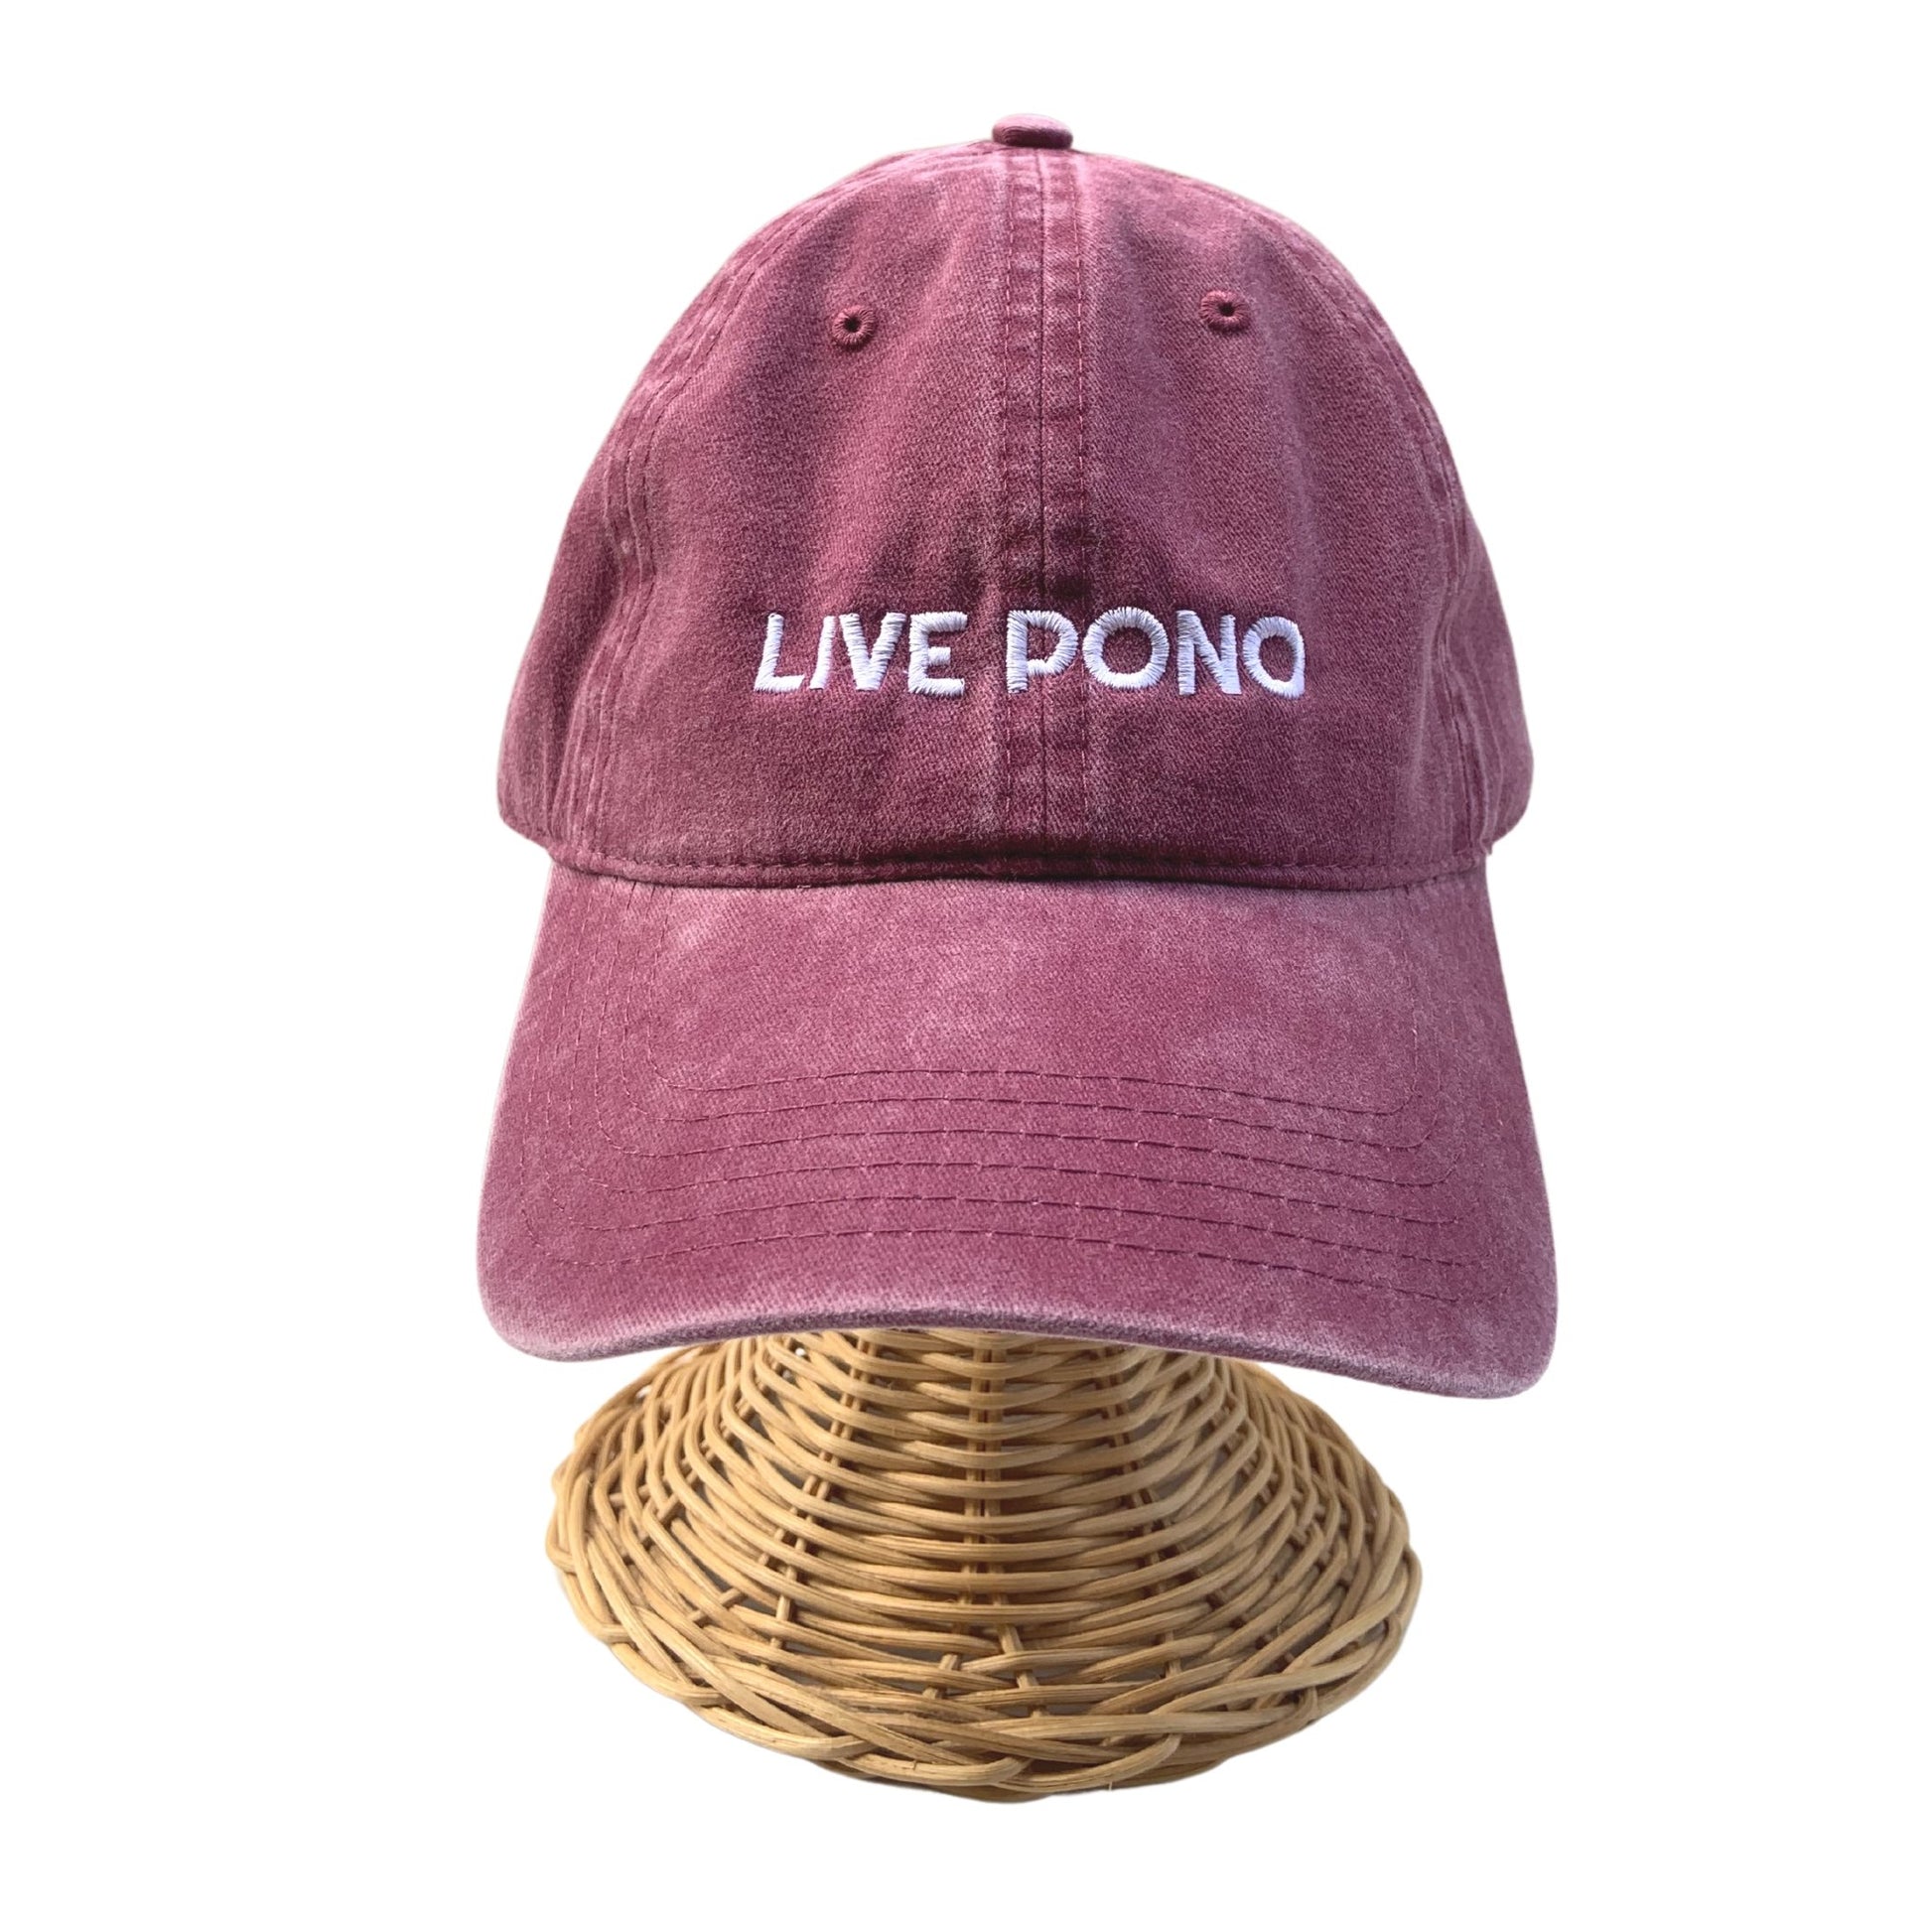 Dad Hat Live Pono Global Village Kailua Boutique